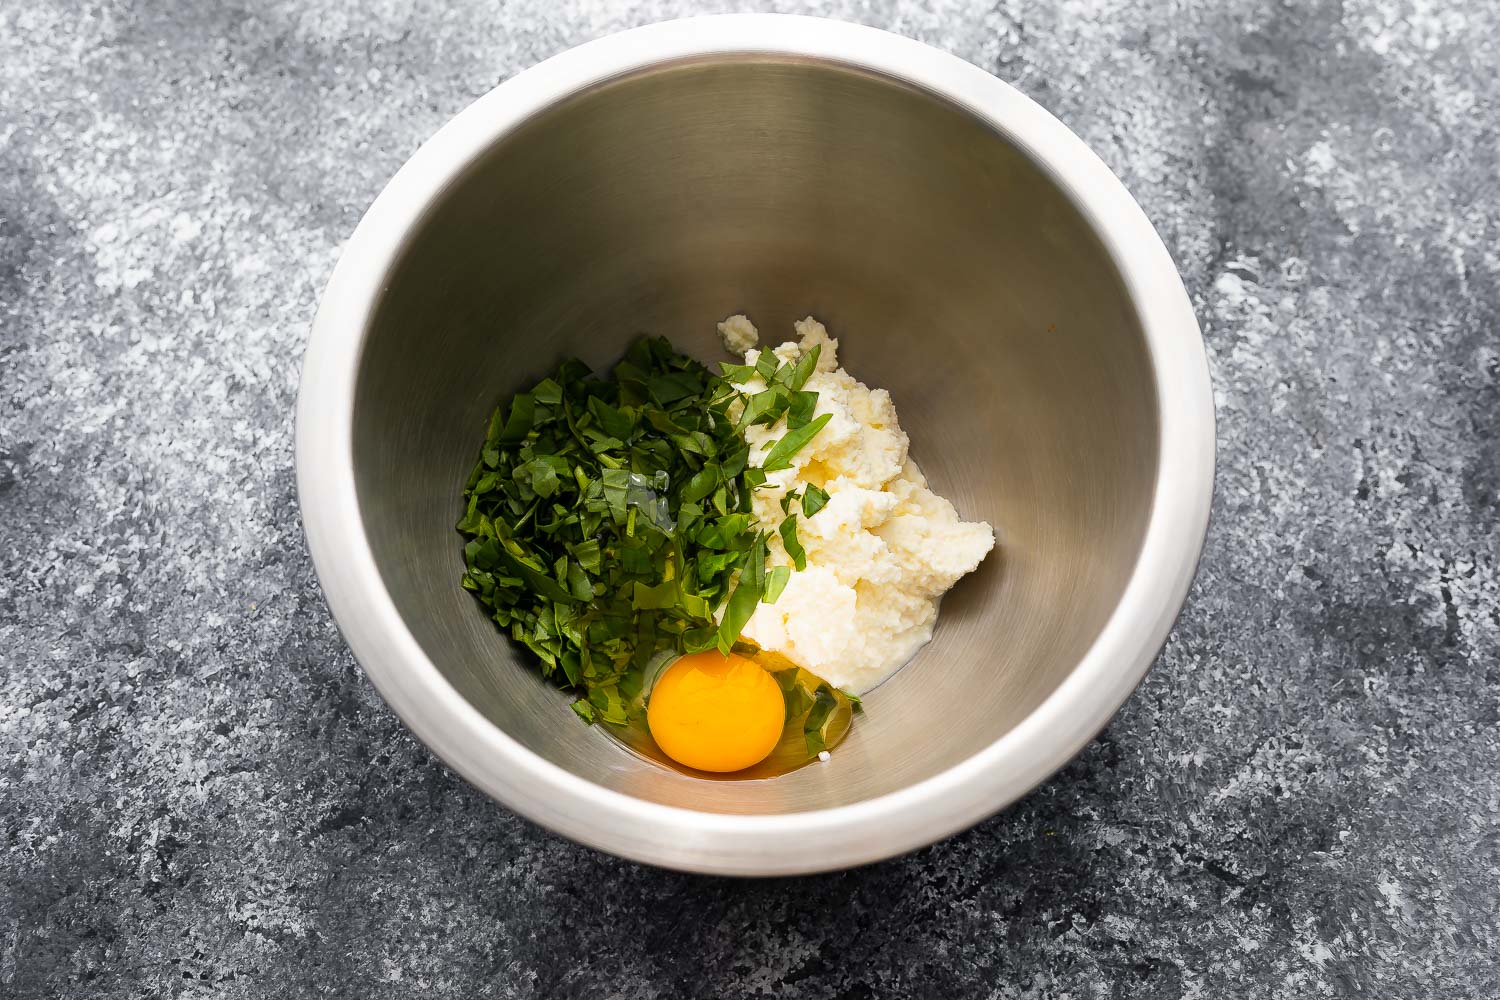 ricotta, basil, egg and salt in bowl